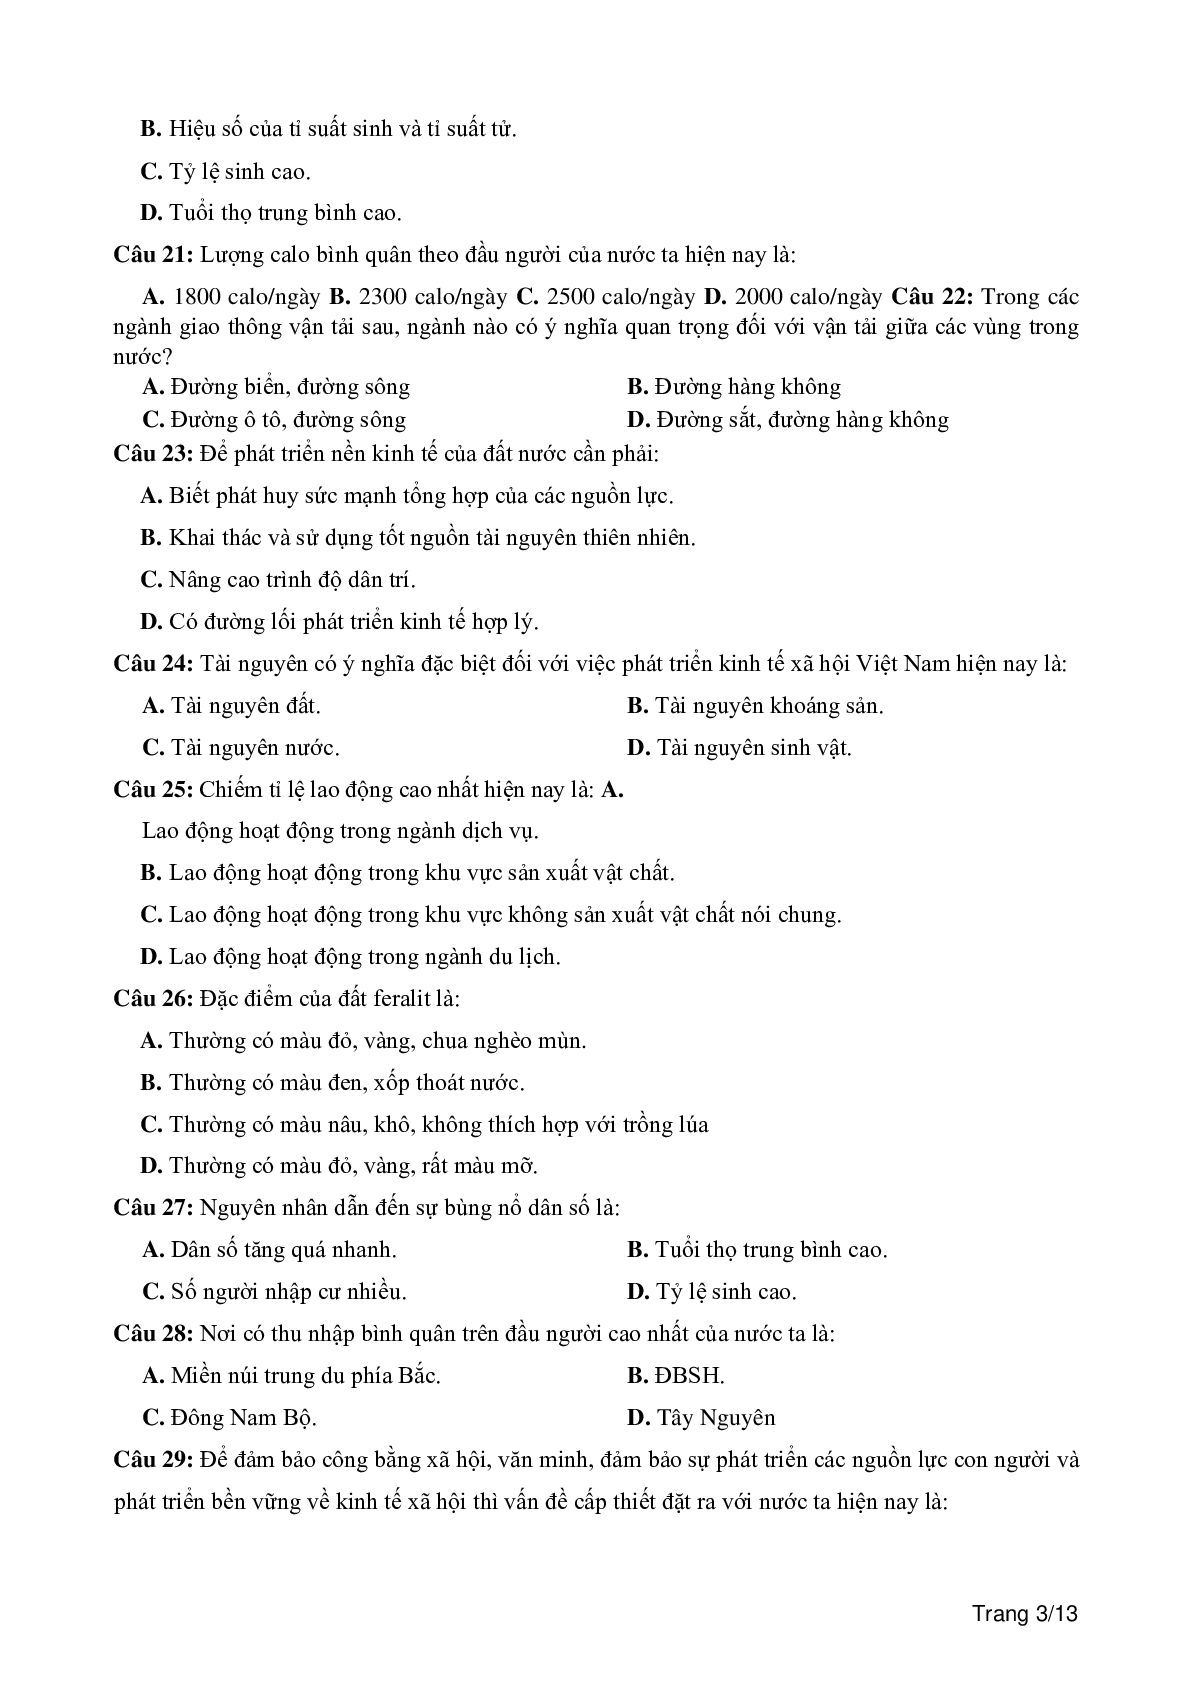 100 câu trắc nghiệm khách quan môn Địa lí lớp 12 (trang 3)